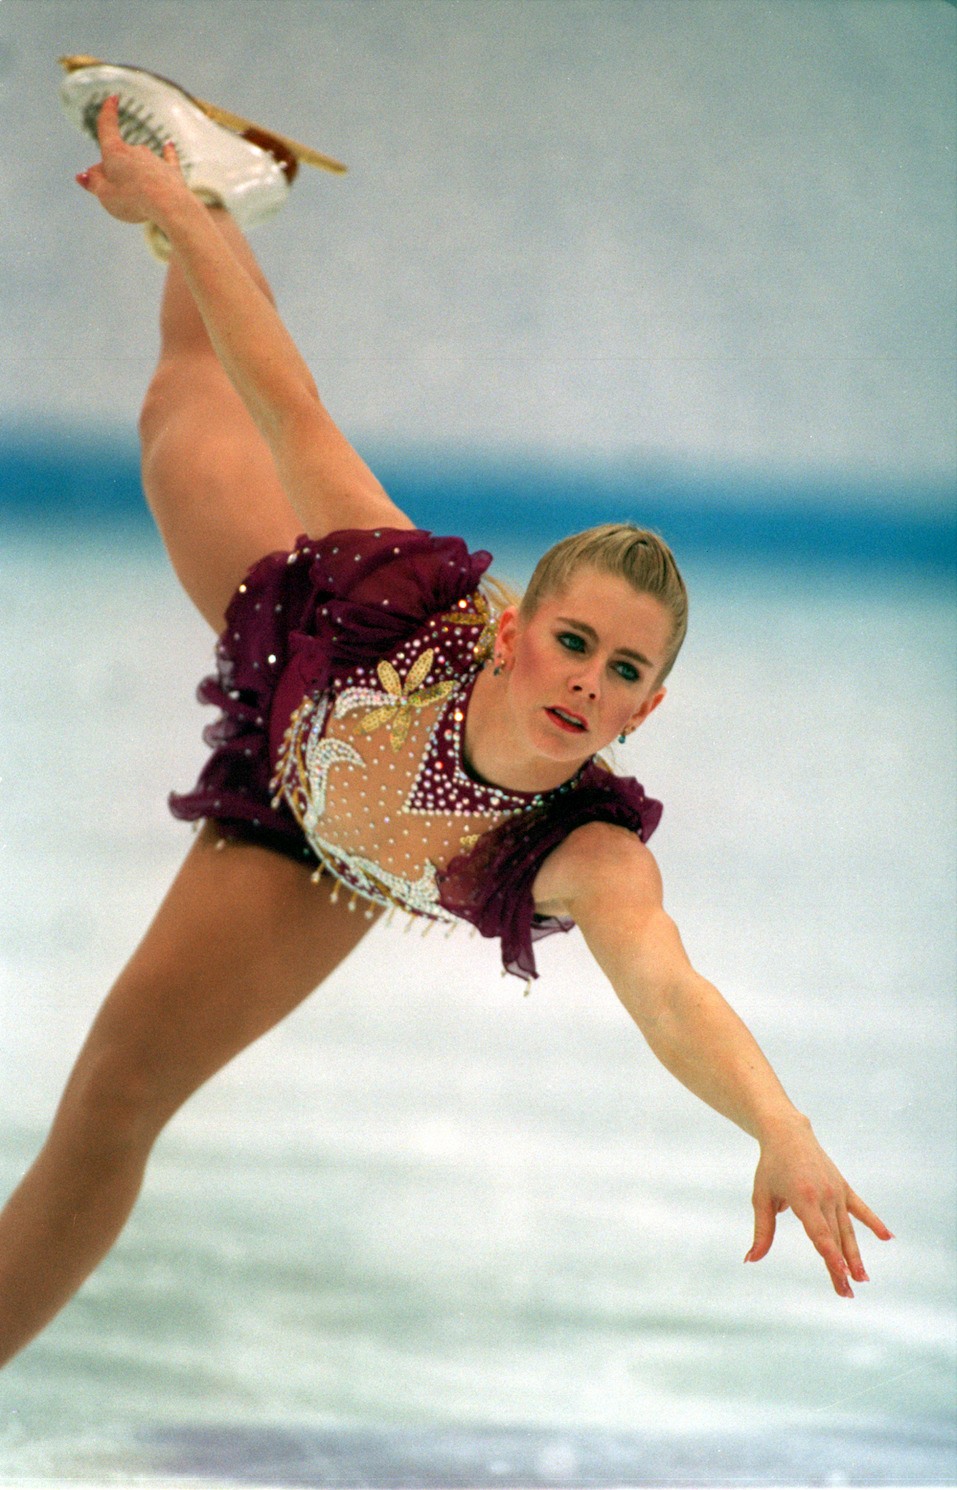 Tonya Harding skating